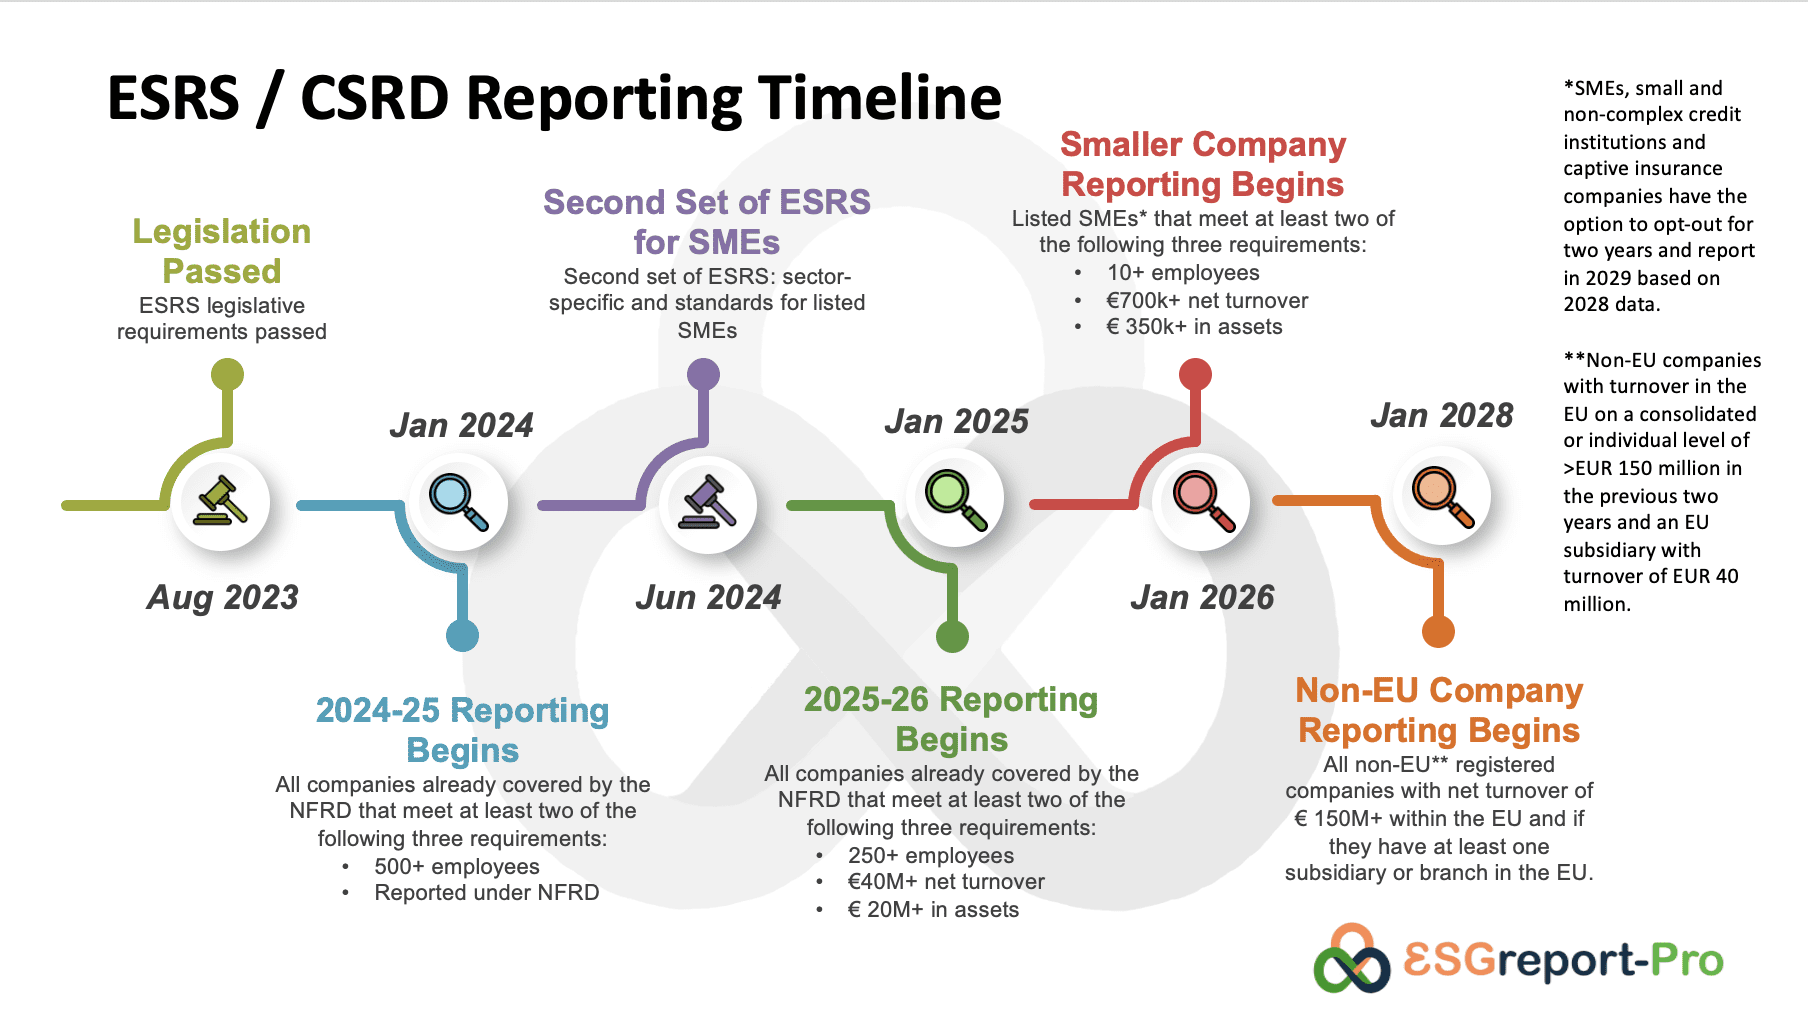 ESRS CSRD Timeline until 2028